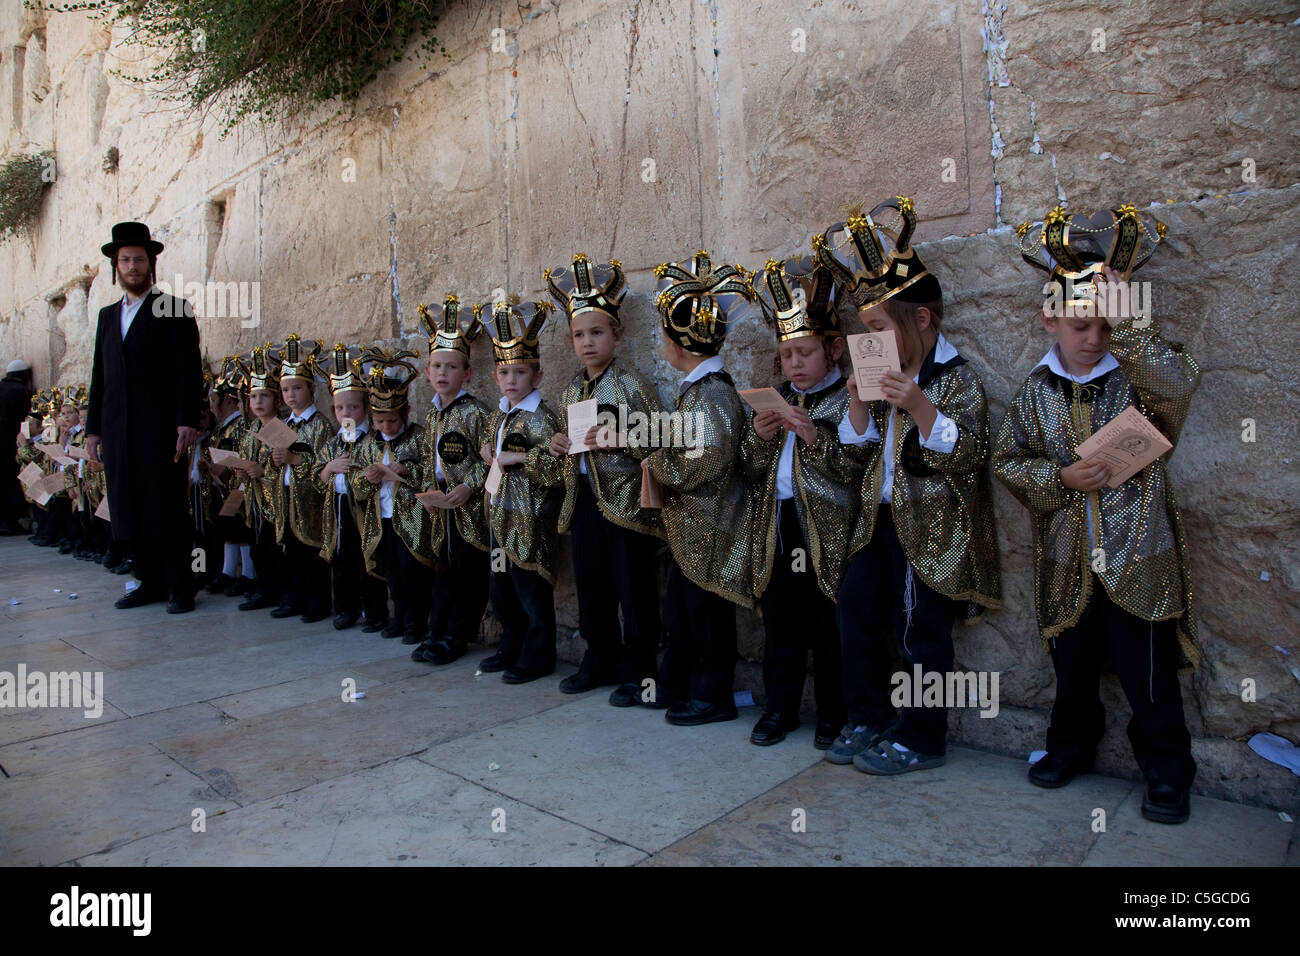 Ultra-orthodoxen Kinder tragen Thora Kronen während der Feier des jüdischen Feiertags von Shavuot, die Übergabe der Tora am Mt. Sinai, sieben Wochen nach dem Exodus des jüdischen Volkes aus Ägypten. Western Wall Altstadt Jerusalem, Israel Stockfoto